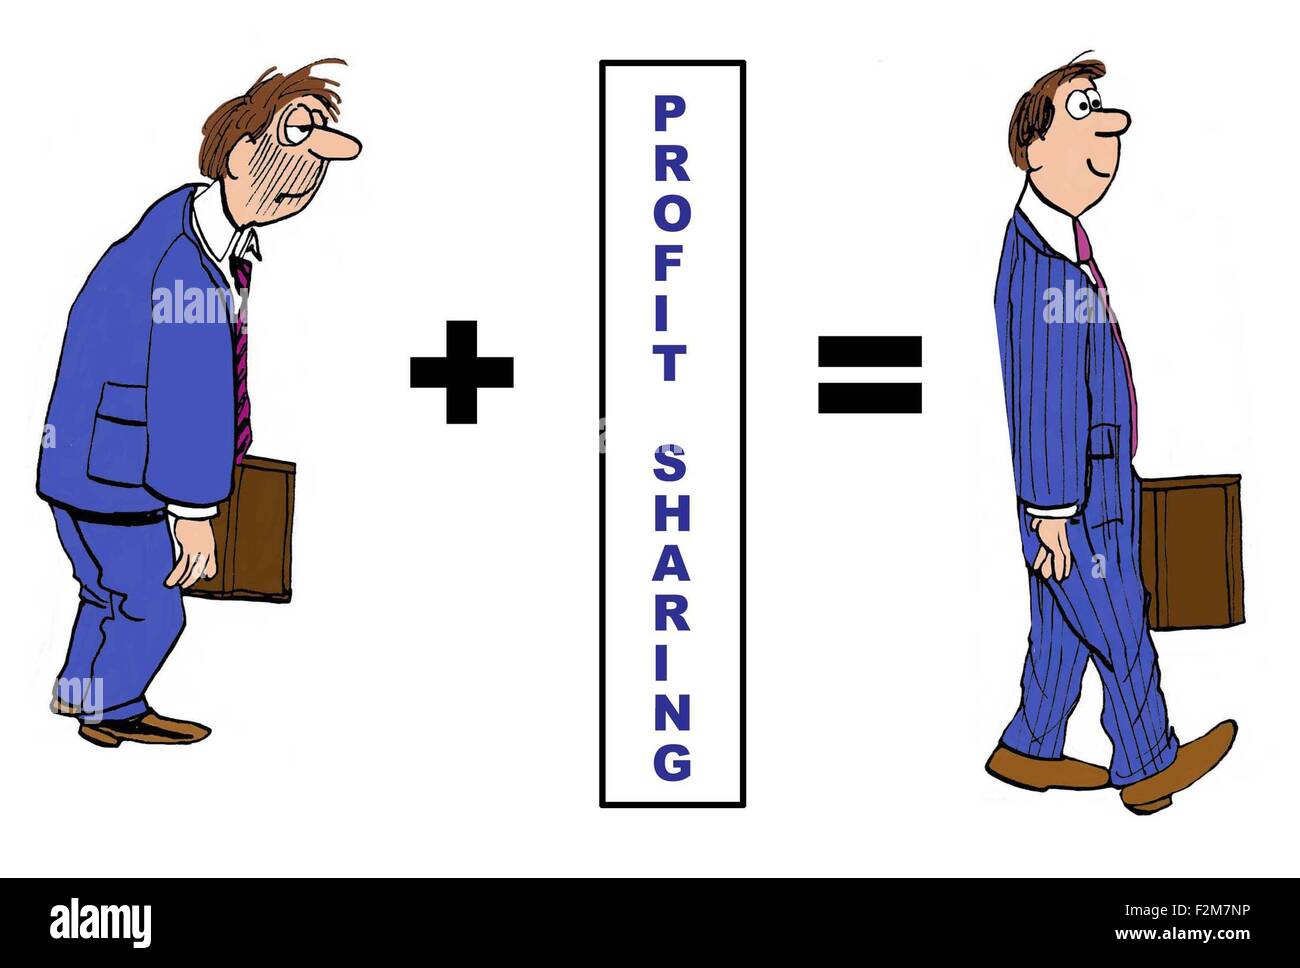 Geschäft Cartoon zeigt niedergeschlagen Geschäftsmann hinzufügen "Gewinnbeteiligung" und er wird glücklich, stolz Geschäftsmann. Stockfoto